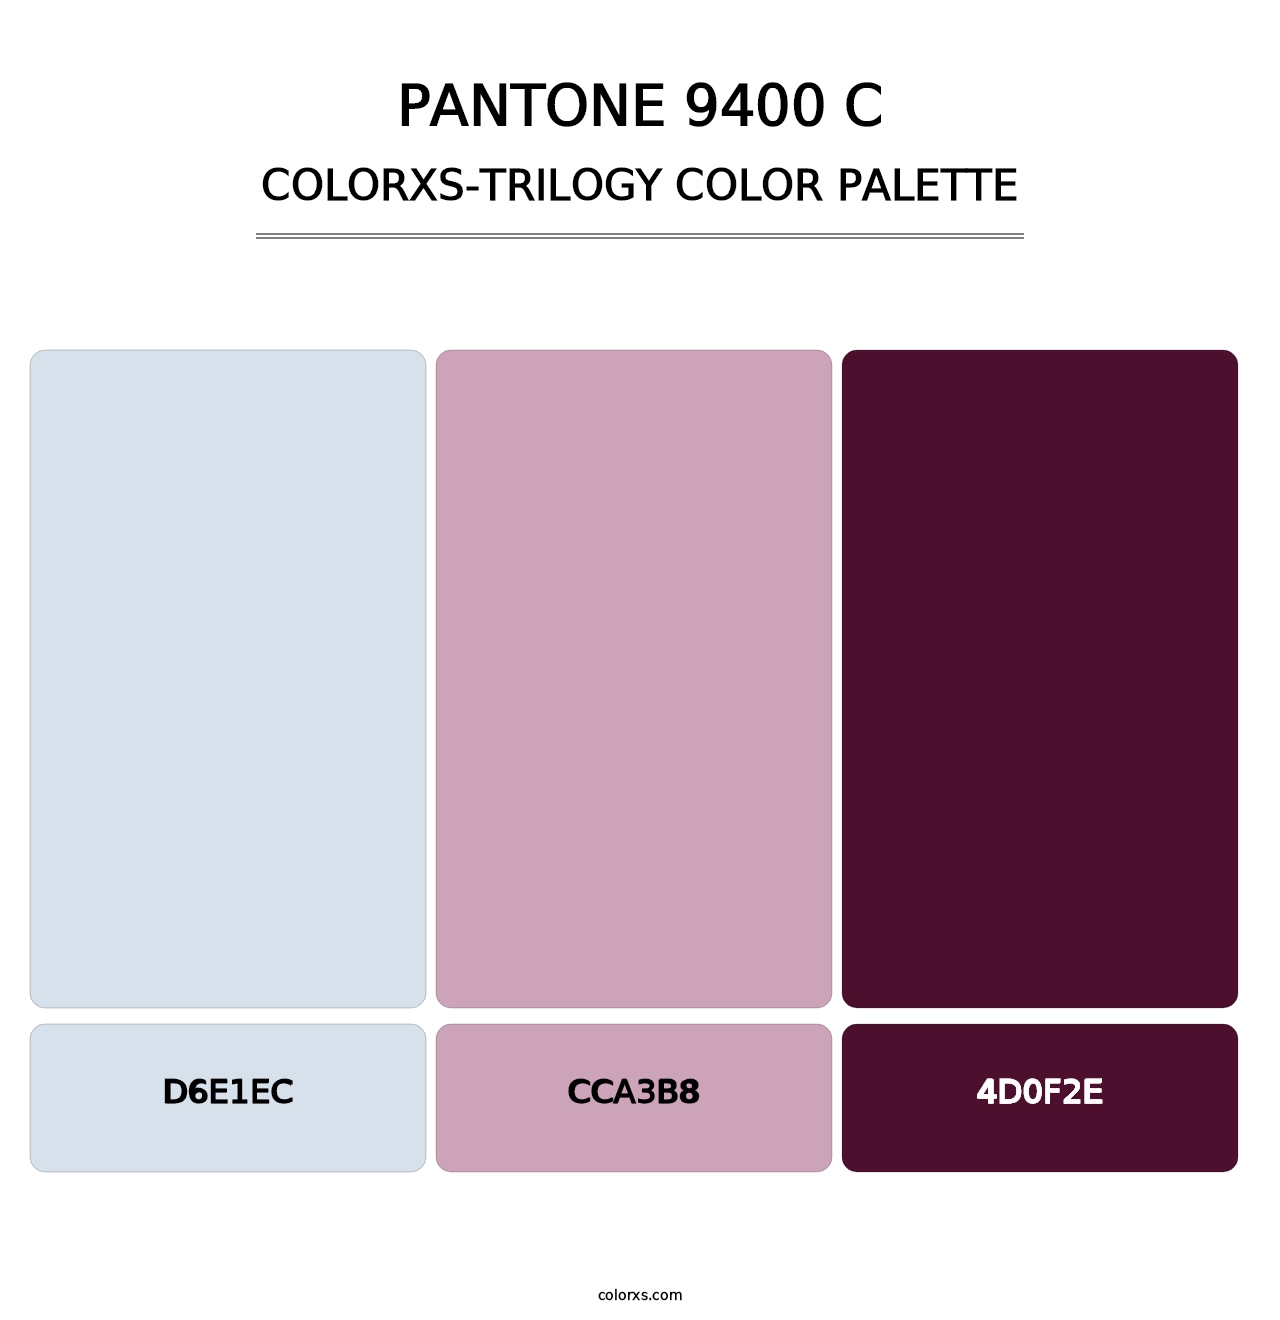 PANTONE 9400 C - Colorxs Trilogy Palette